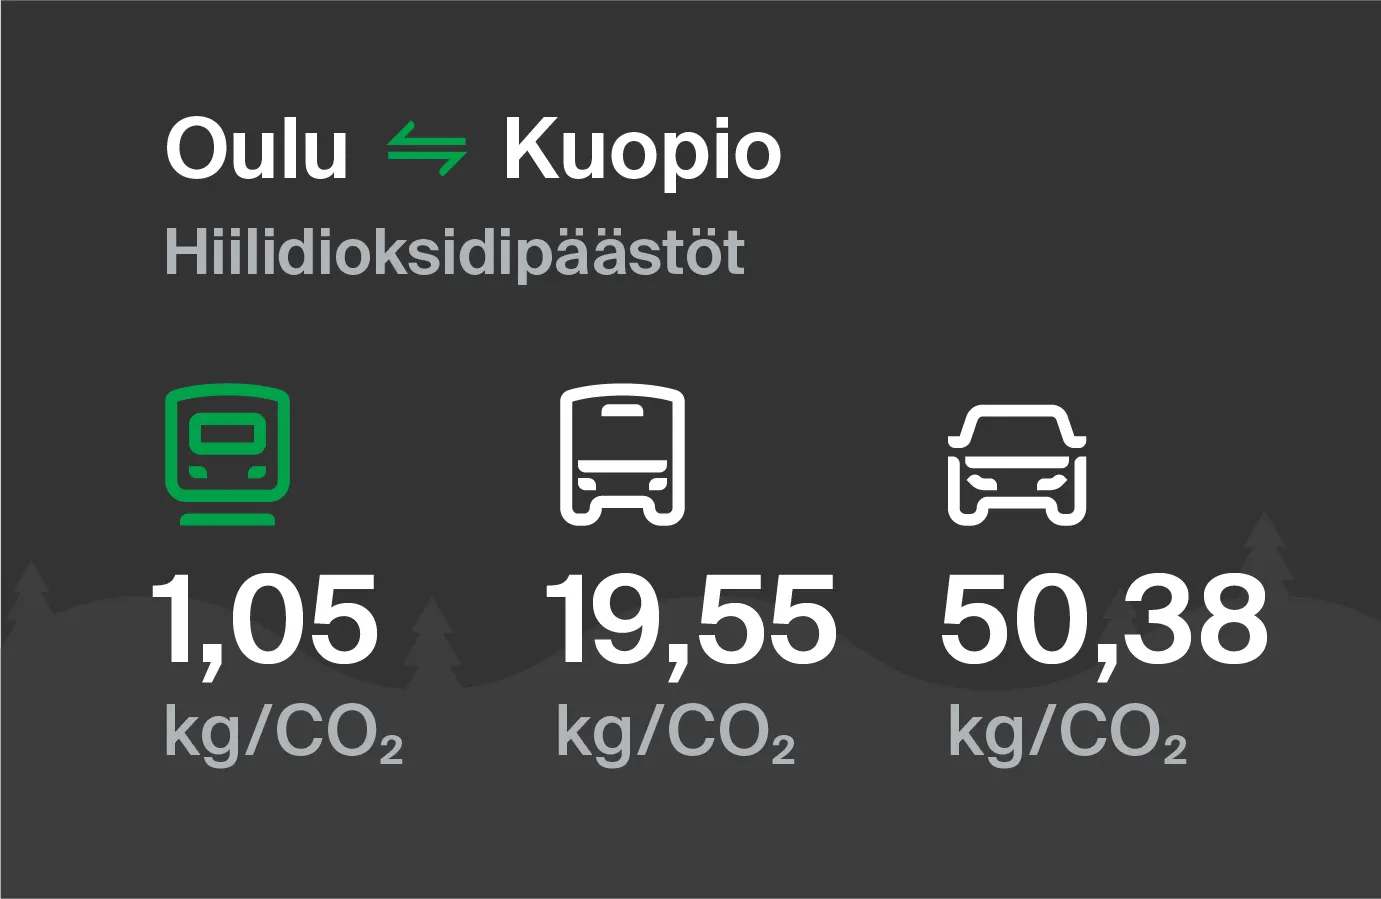 Koldioxidutsläpp från Uleåborg till Kuopio genom olika transportsätt: med tåg 1,05 kg/CO2, med buss 19,55 kg/CO2 och med bil 50,38 kg/CO2.